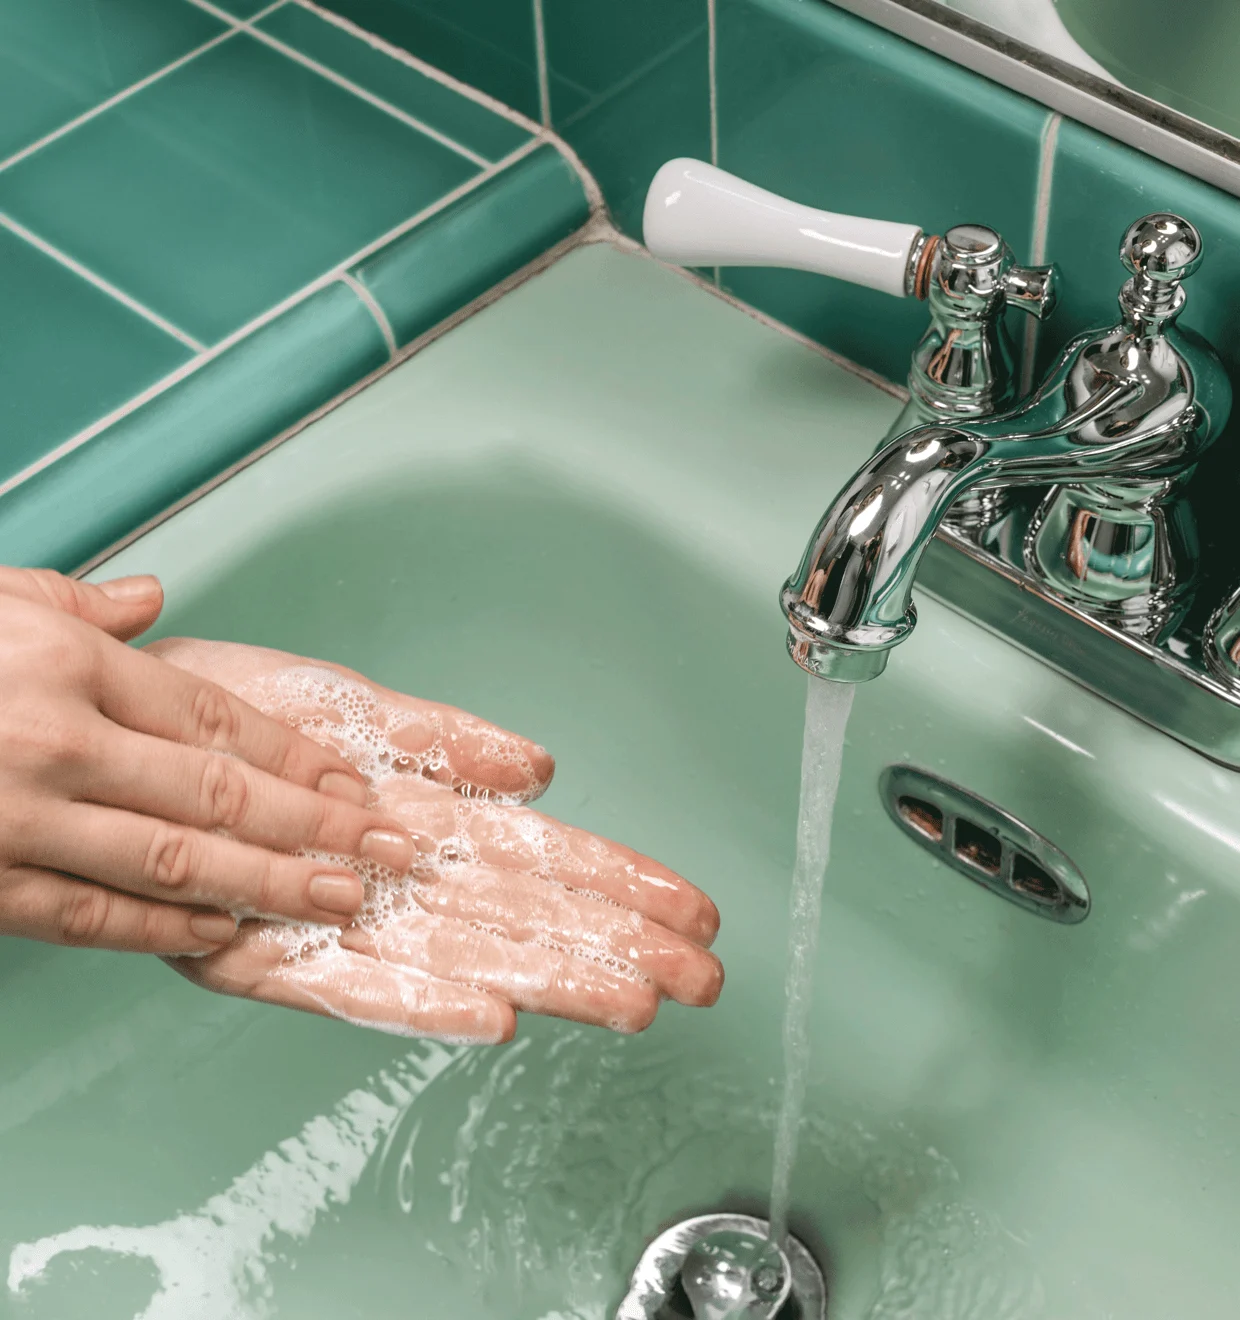 Formula Botanica promo photo - handwashing